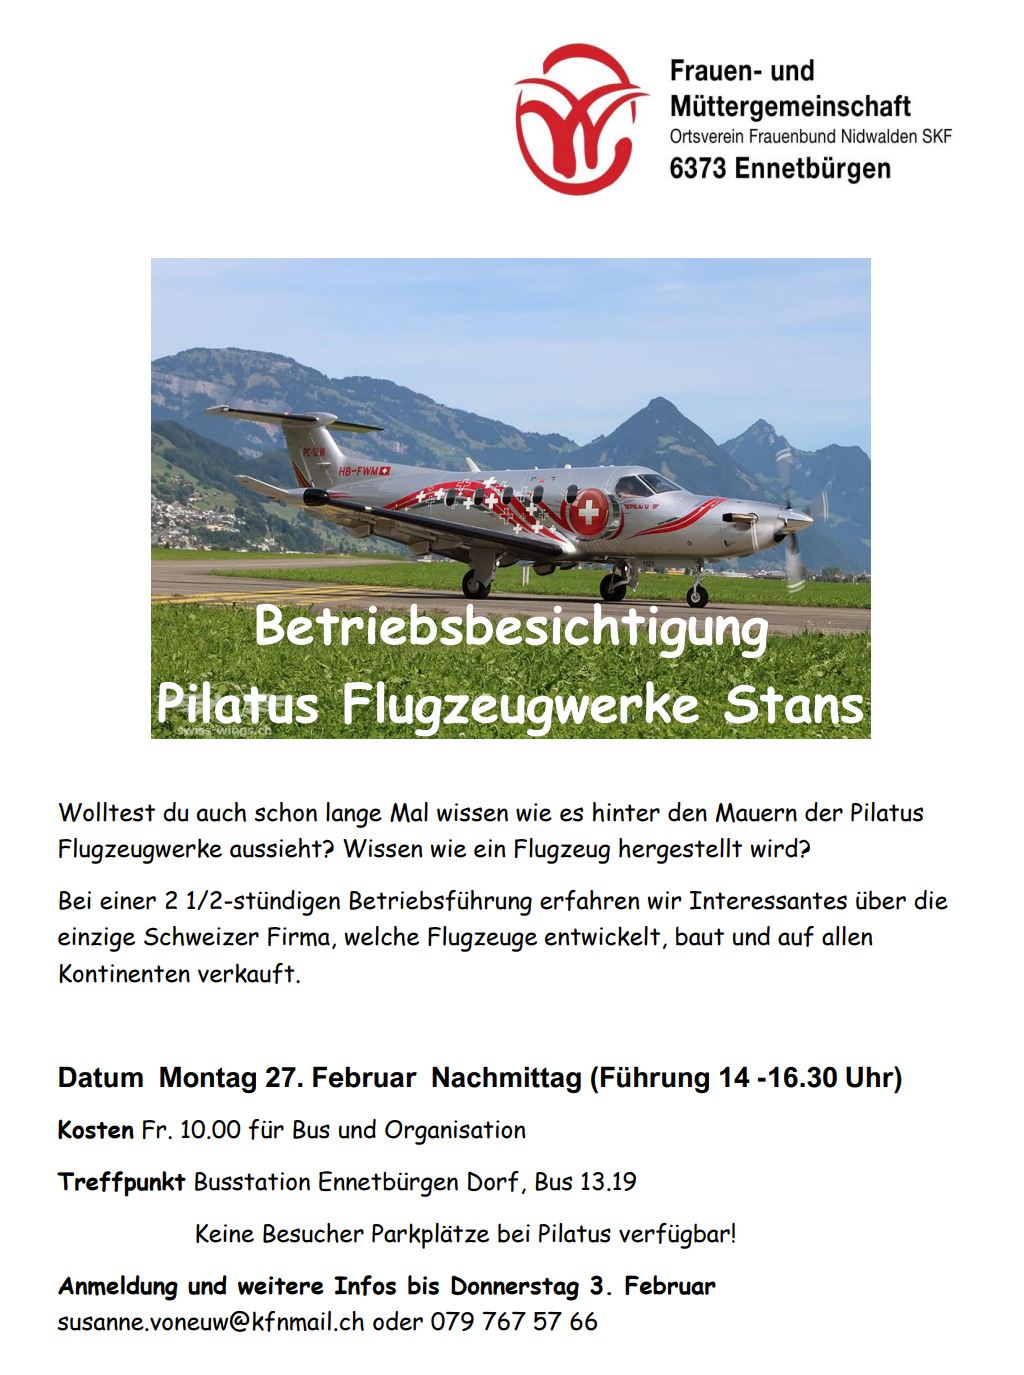 Flyer Pilatus BetriebsbesichtigungJPG